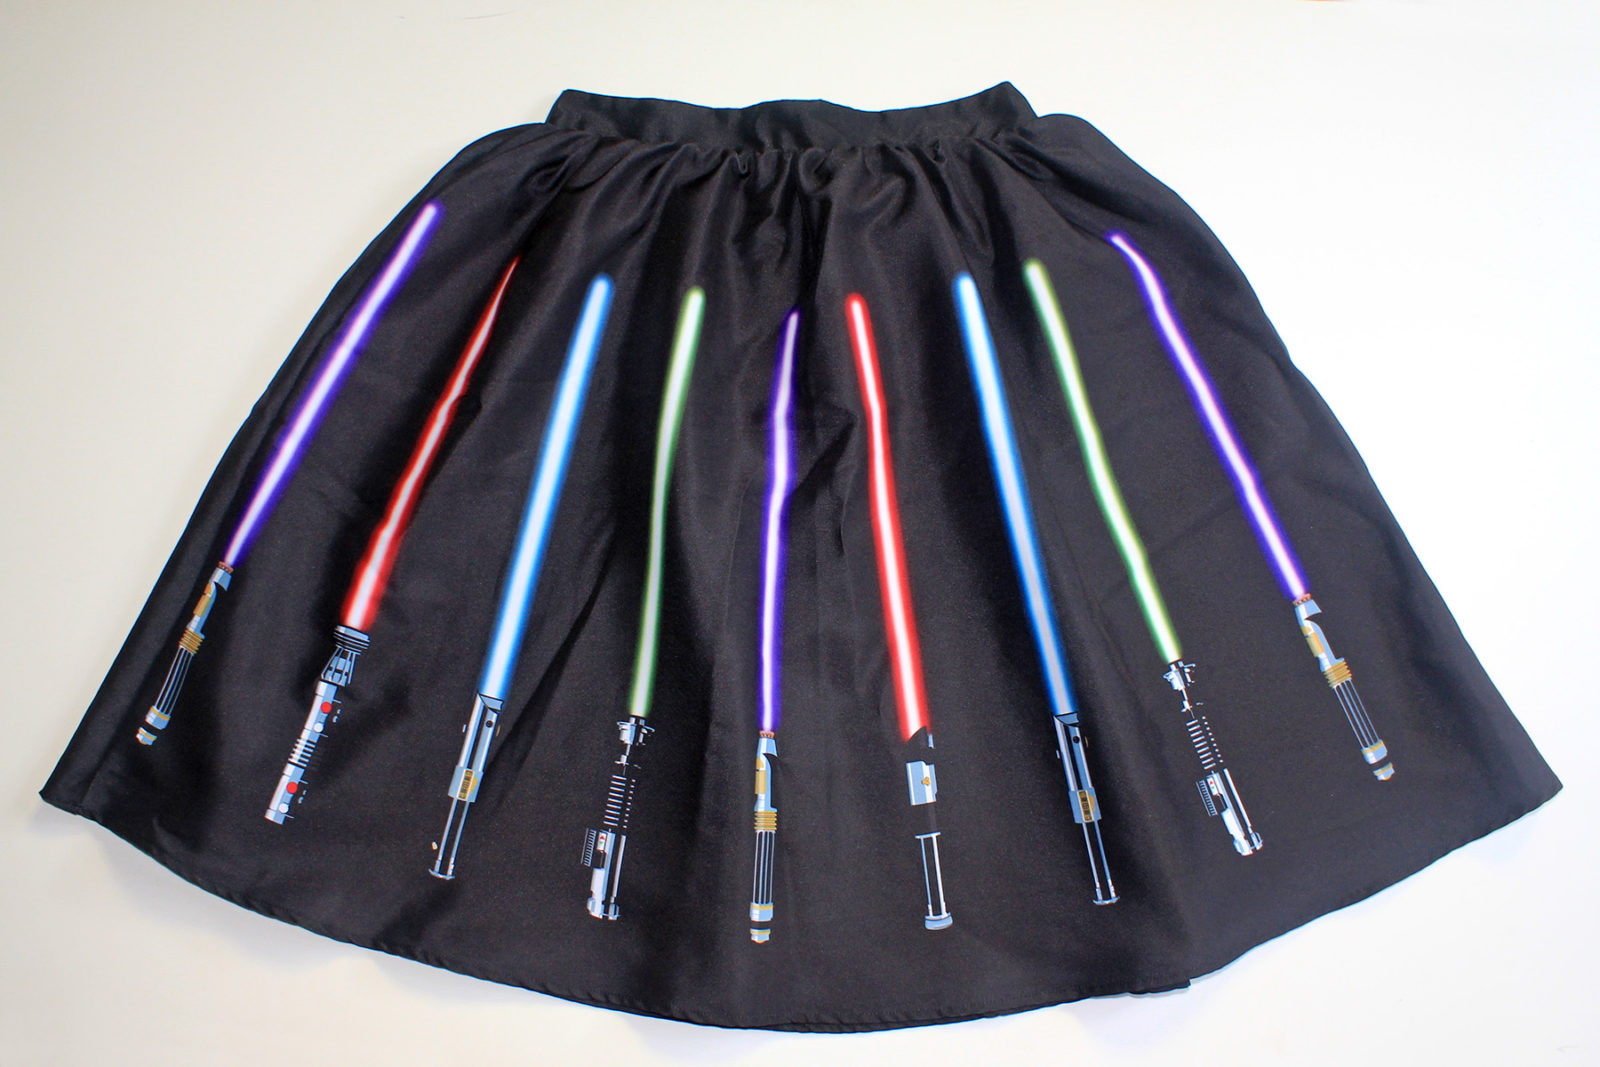 Review – Lightsaber skirt